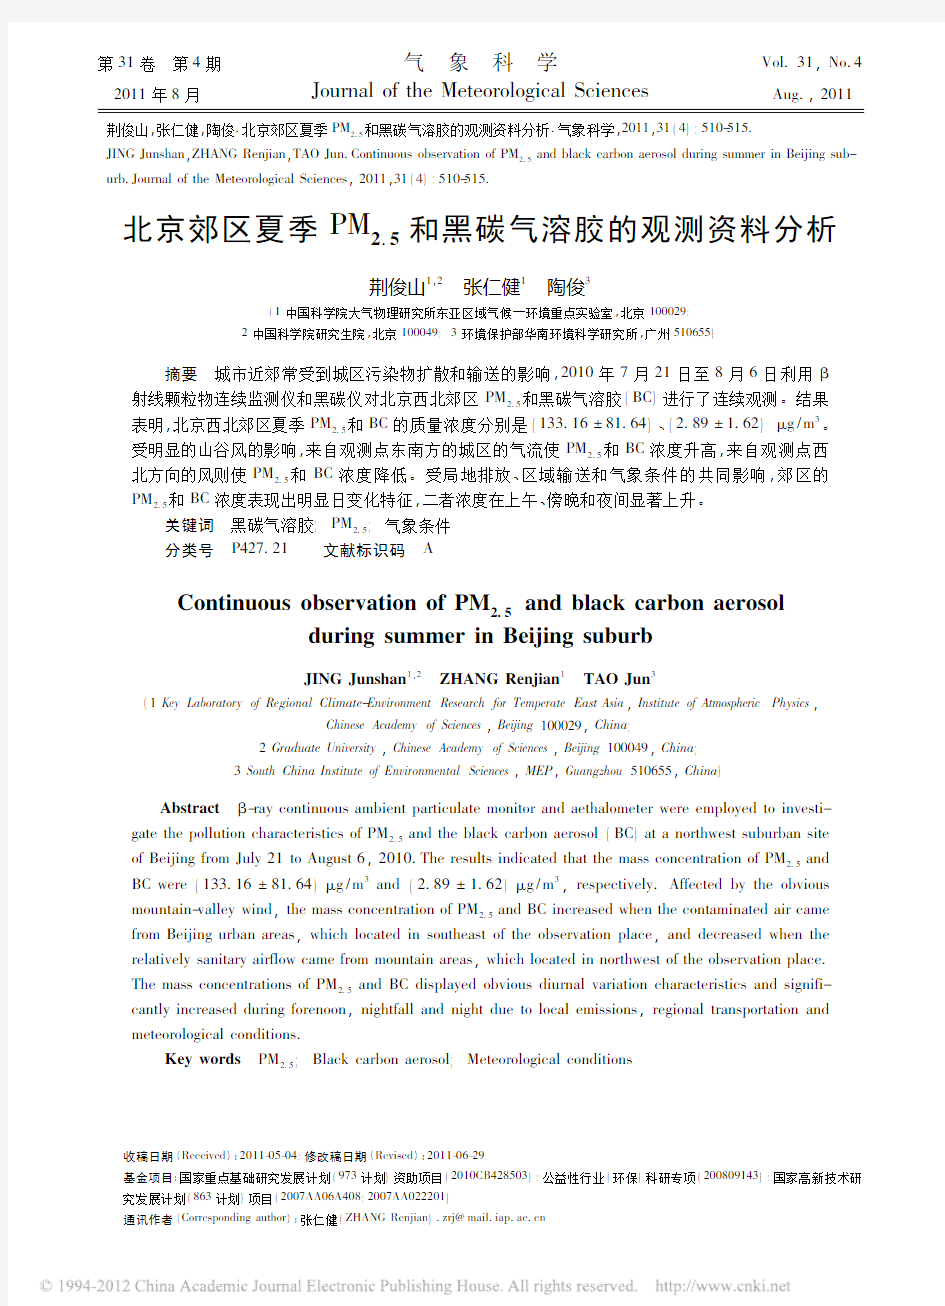 北京郊区夏季气溶胶和黑碳观测资料特征分析